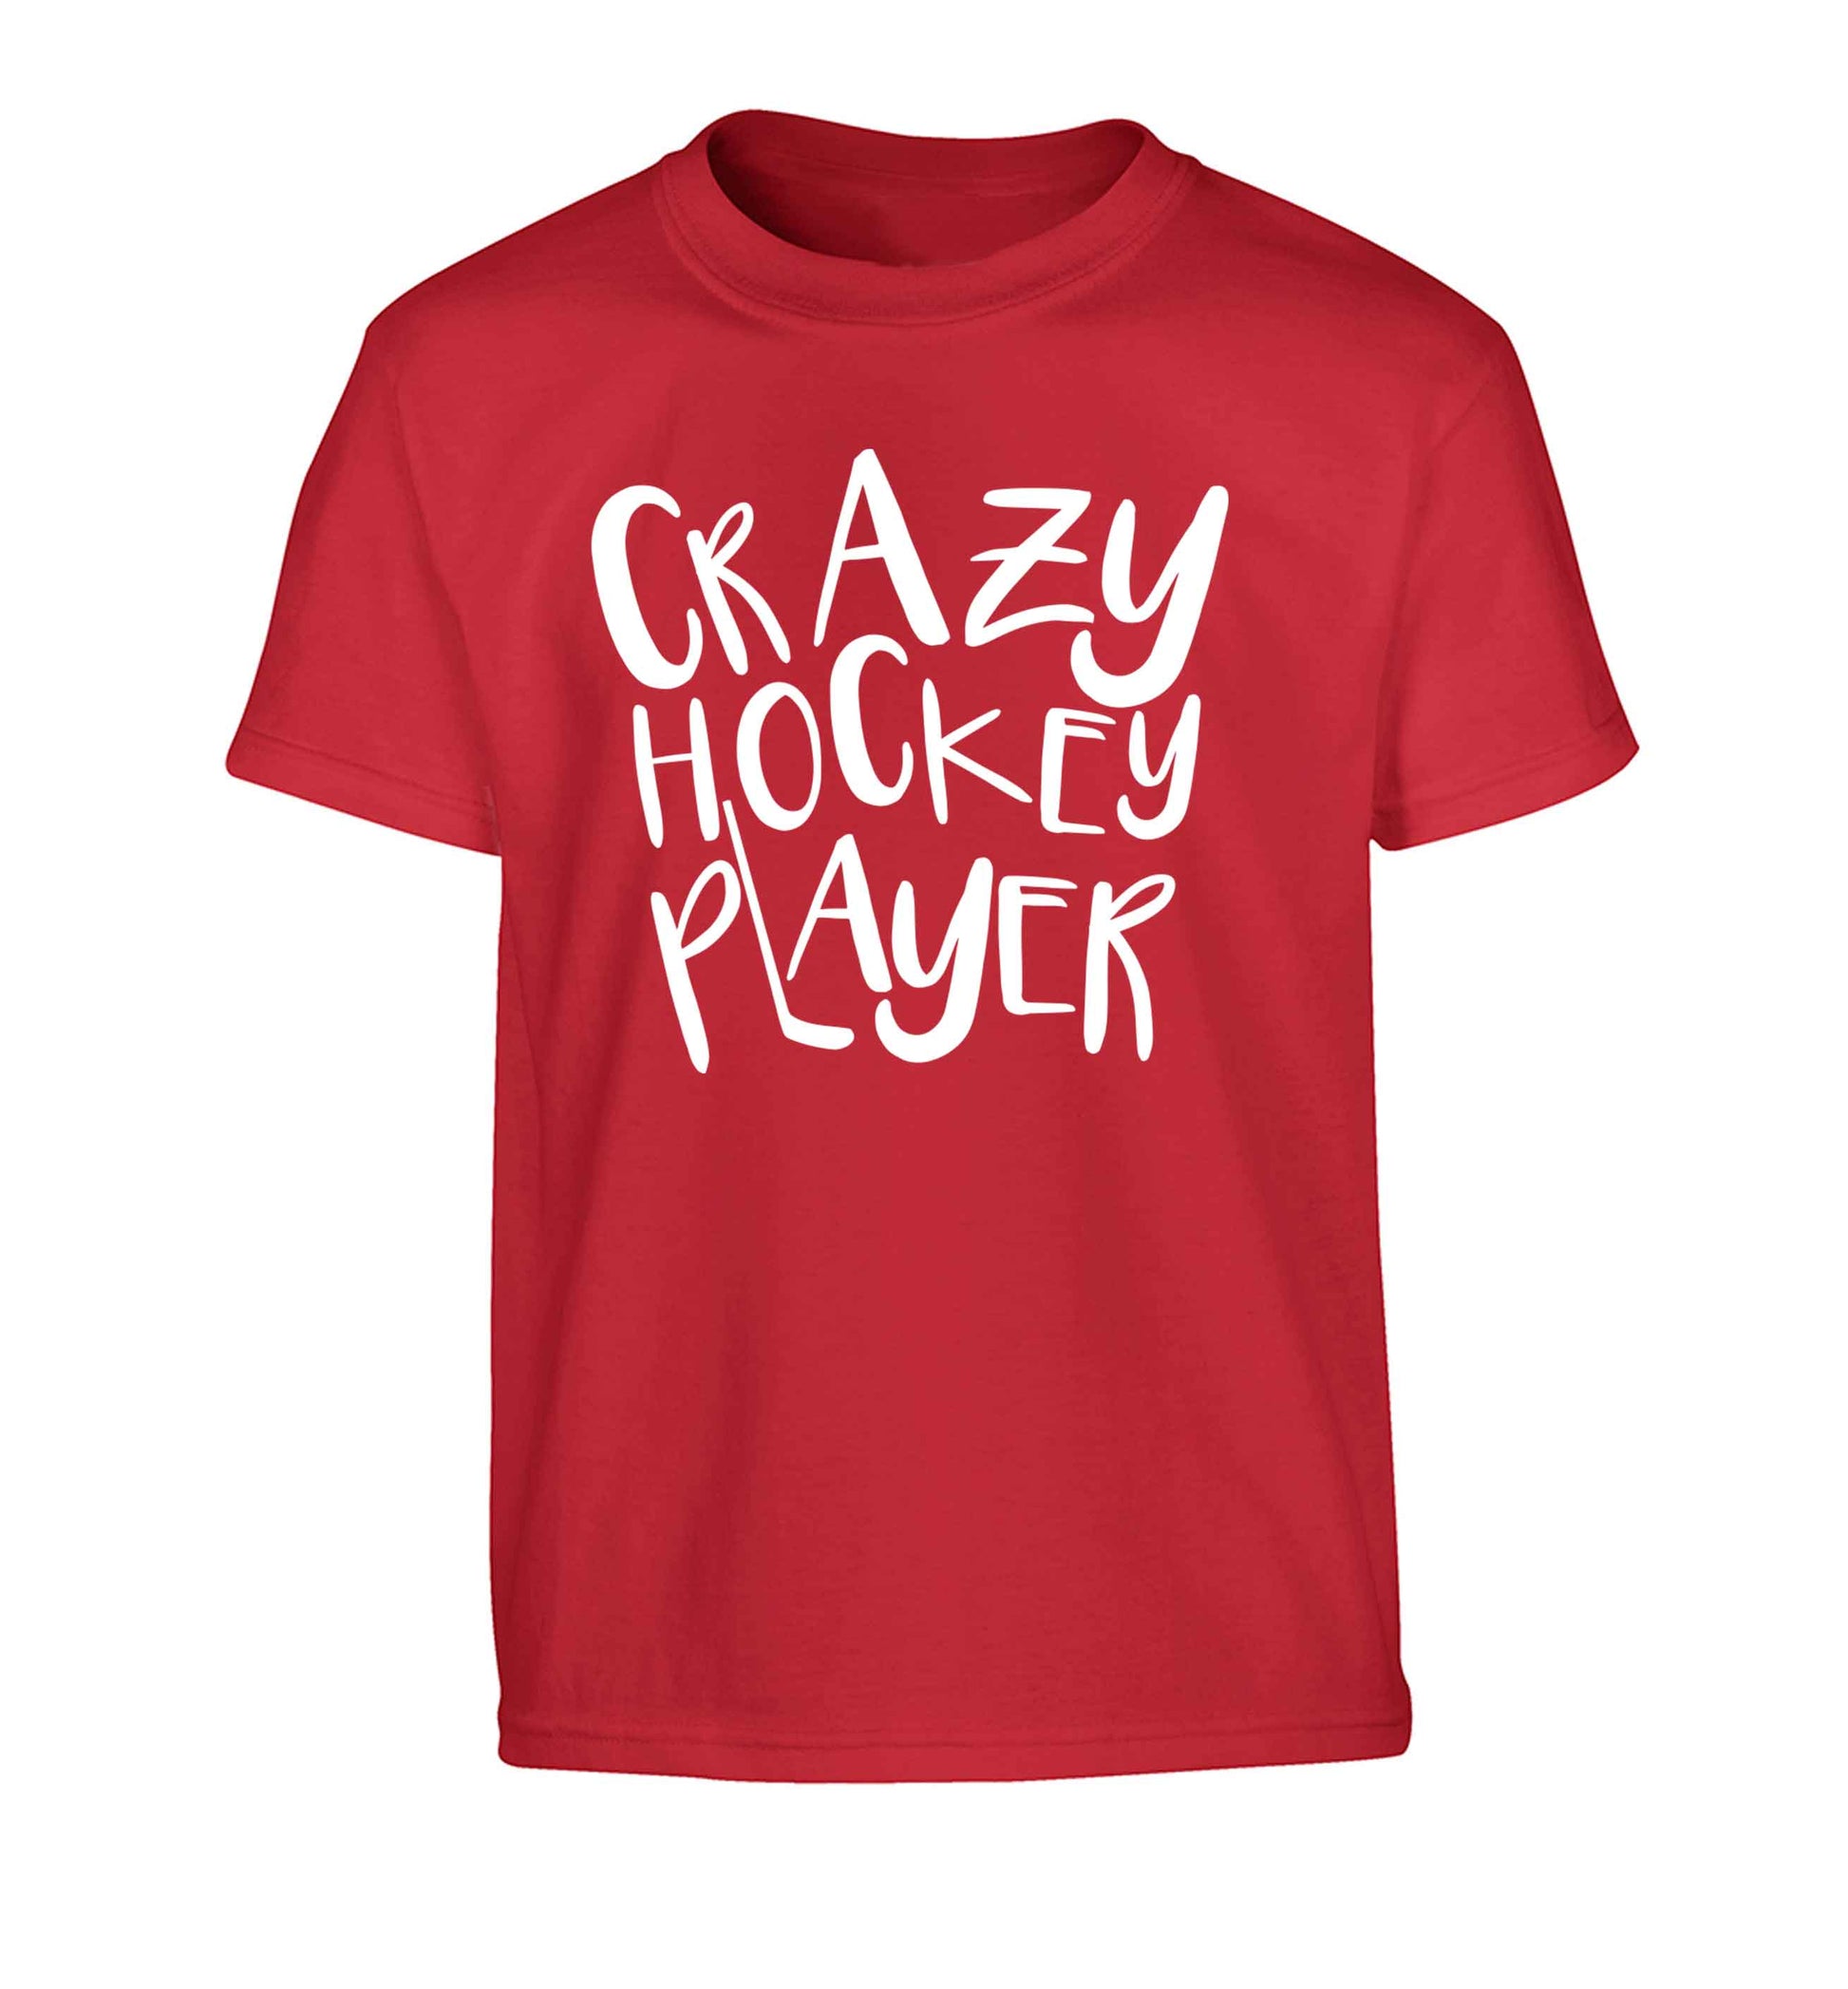 Crazy hockey player Children's red Tshirt 12-13 Years